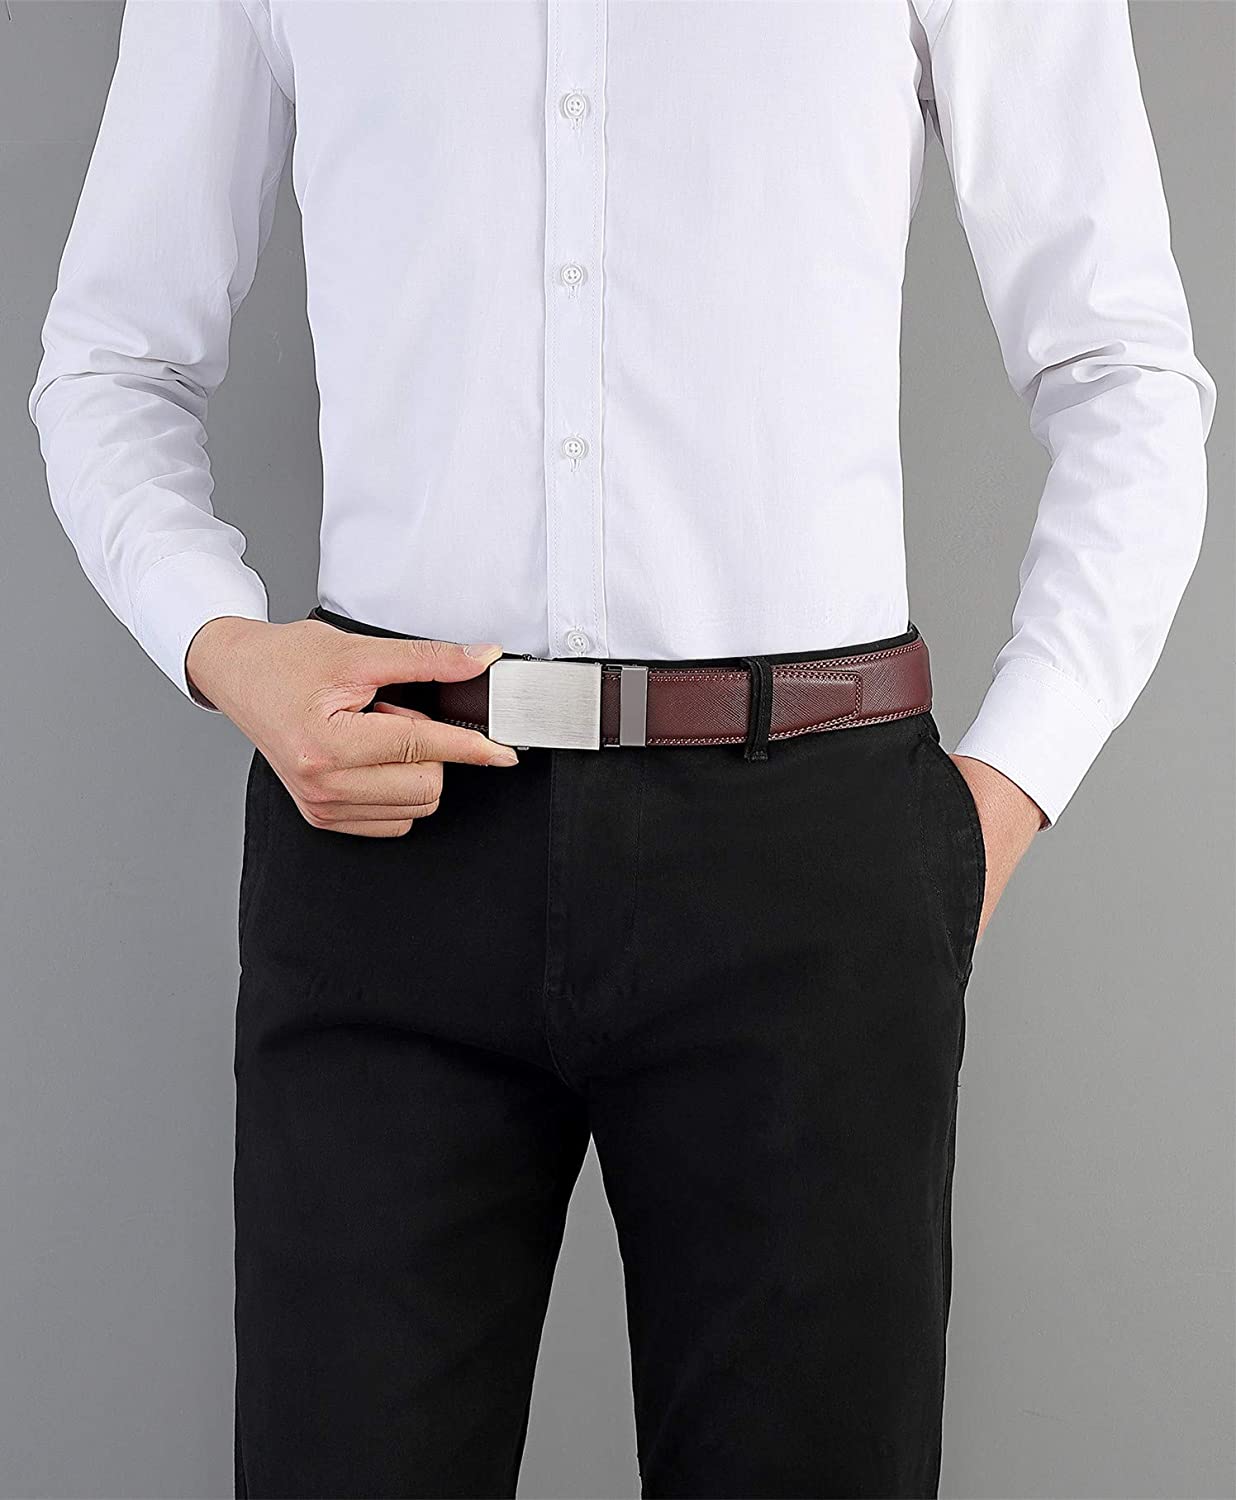 Men's Belt Ratchet Leather Dress Suit Casual Jeans Belts -Trim to fit ...